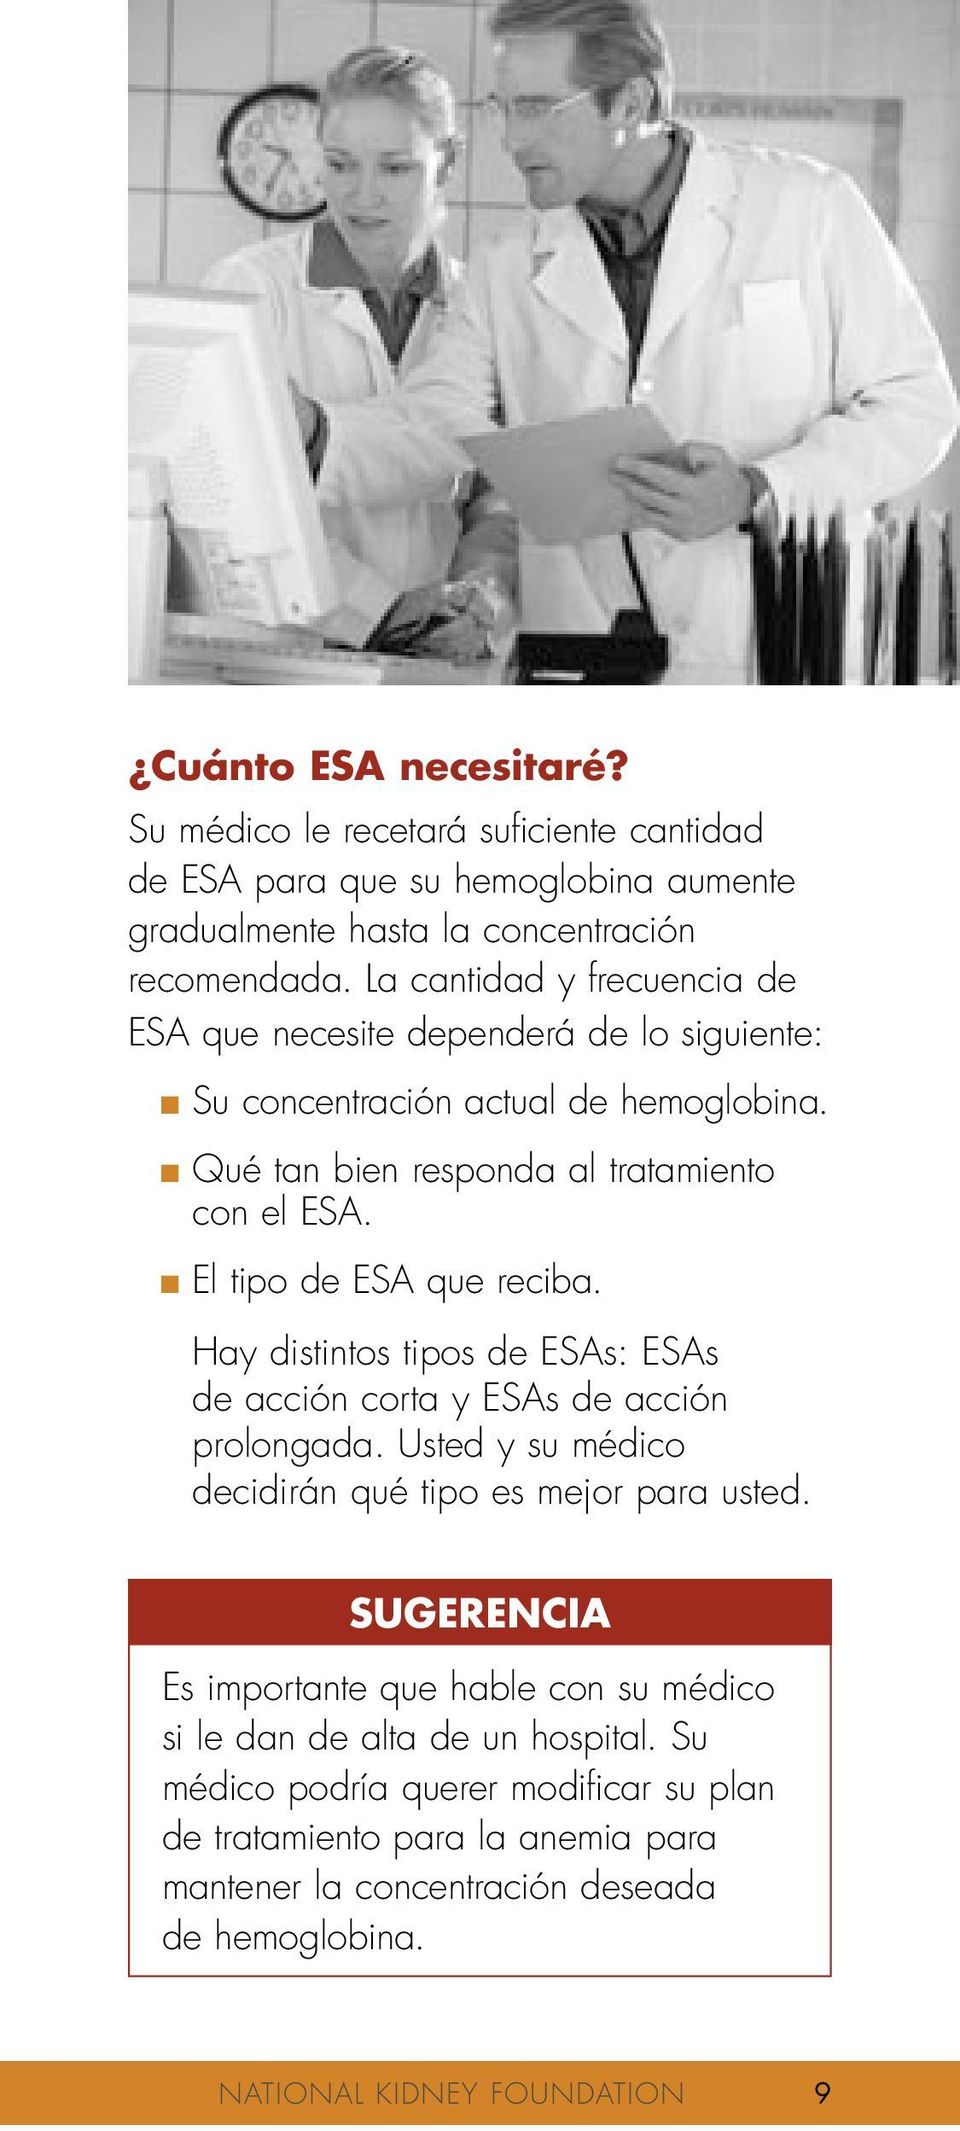 El tipo de ESA que reciba. Hay distintos tipos de ESAs: ESAs de acción corta y ESAs de acción prolongada. Usted y su médico decidirán qué tipo es mejor para usted.